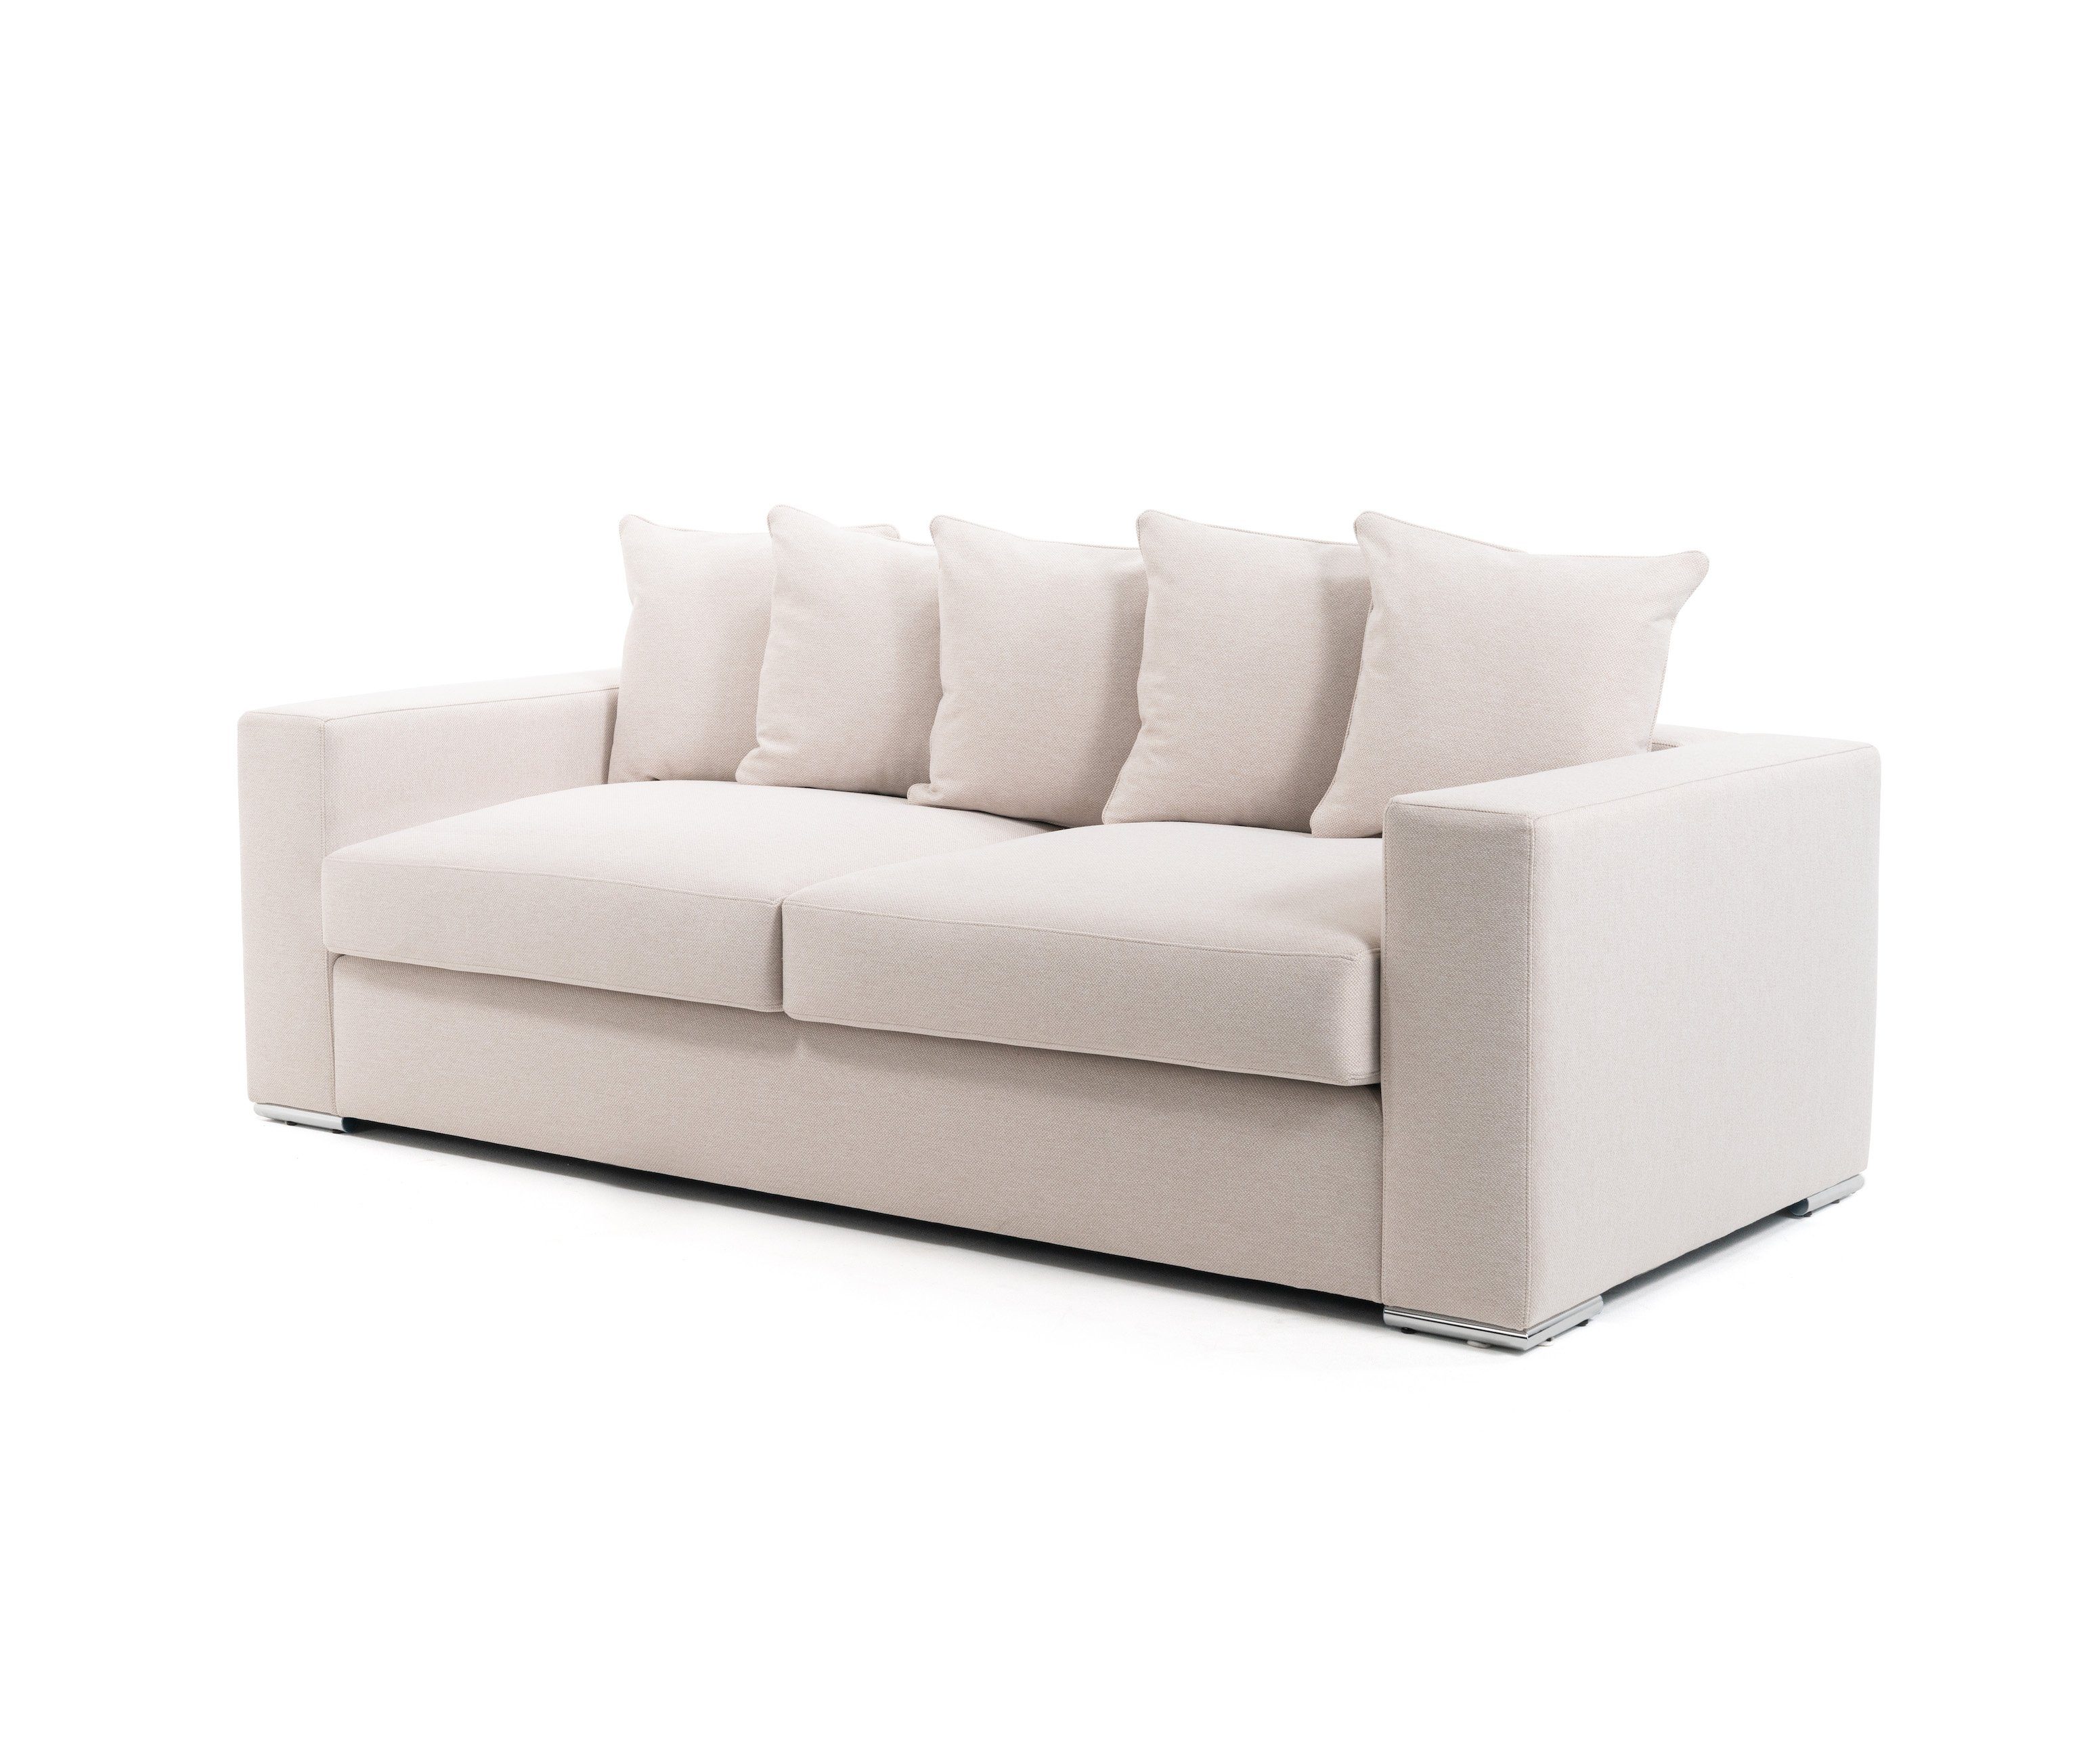 Sitzer Qualität (Wolloptik) Greige Elements Woll-Bezug, 3 trifft Größen, Samt Sofa Couch 'Cooper' / AMARIS Beige Design od. 2.25m, 4